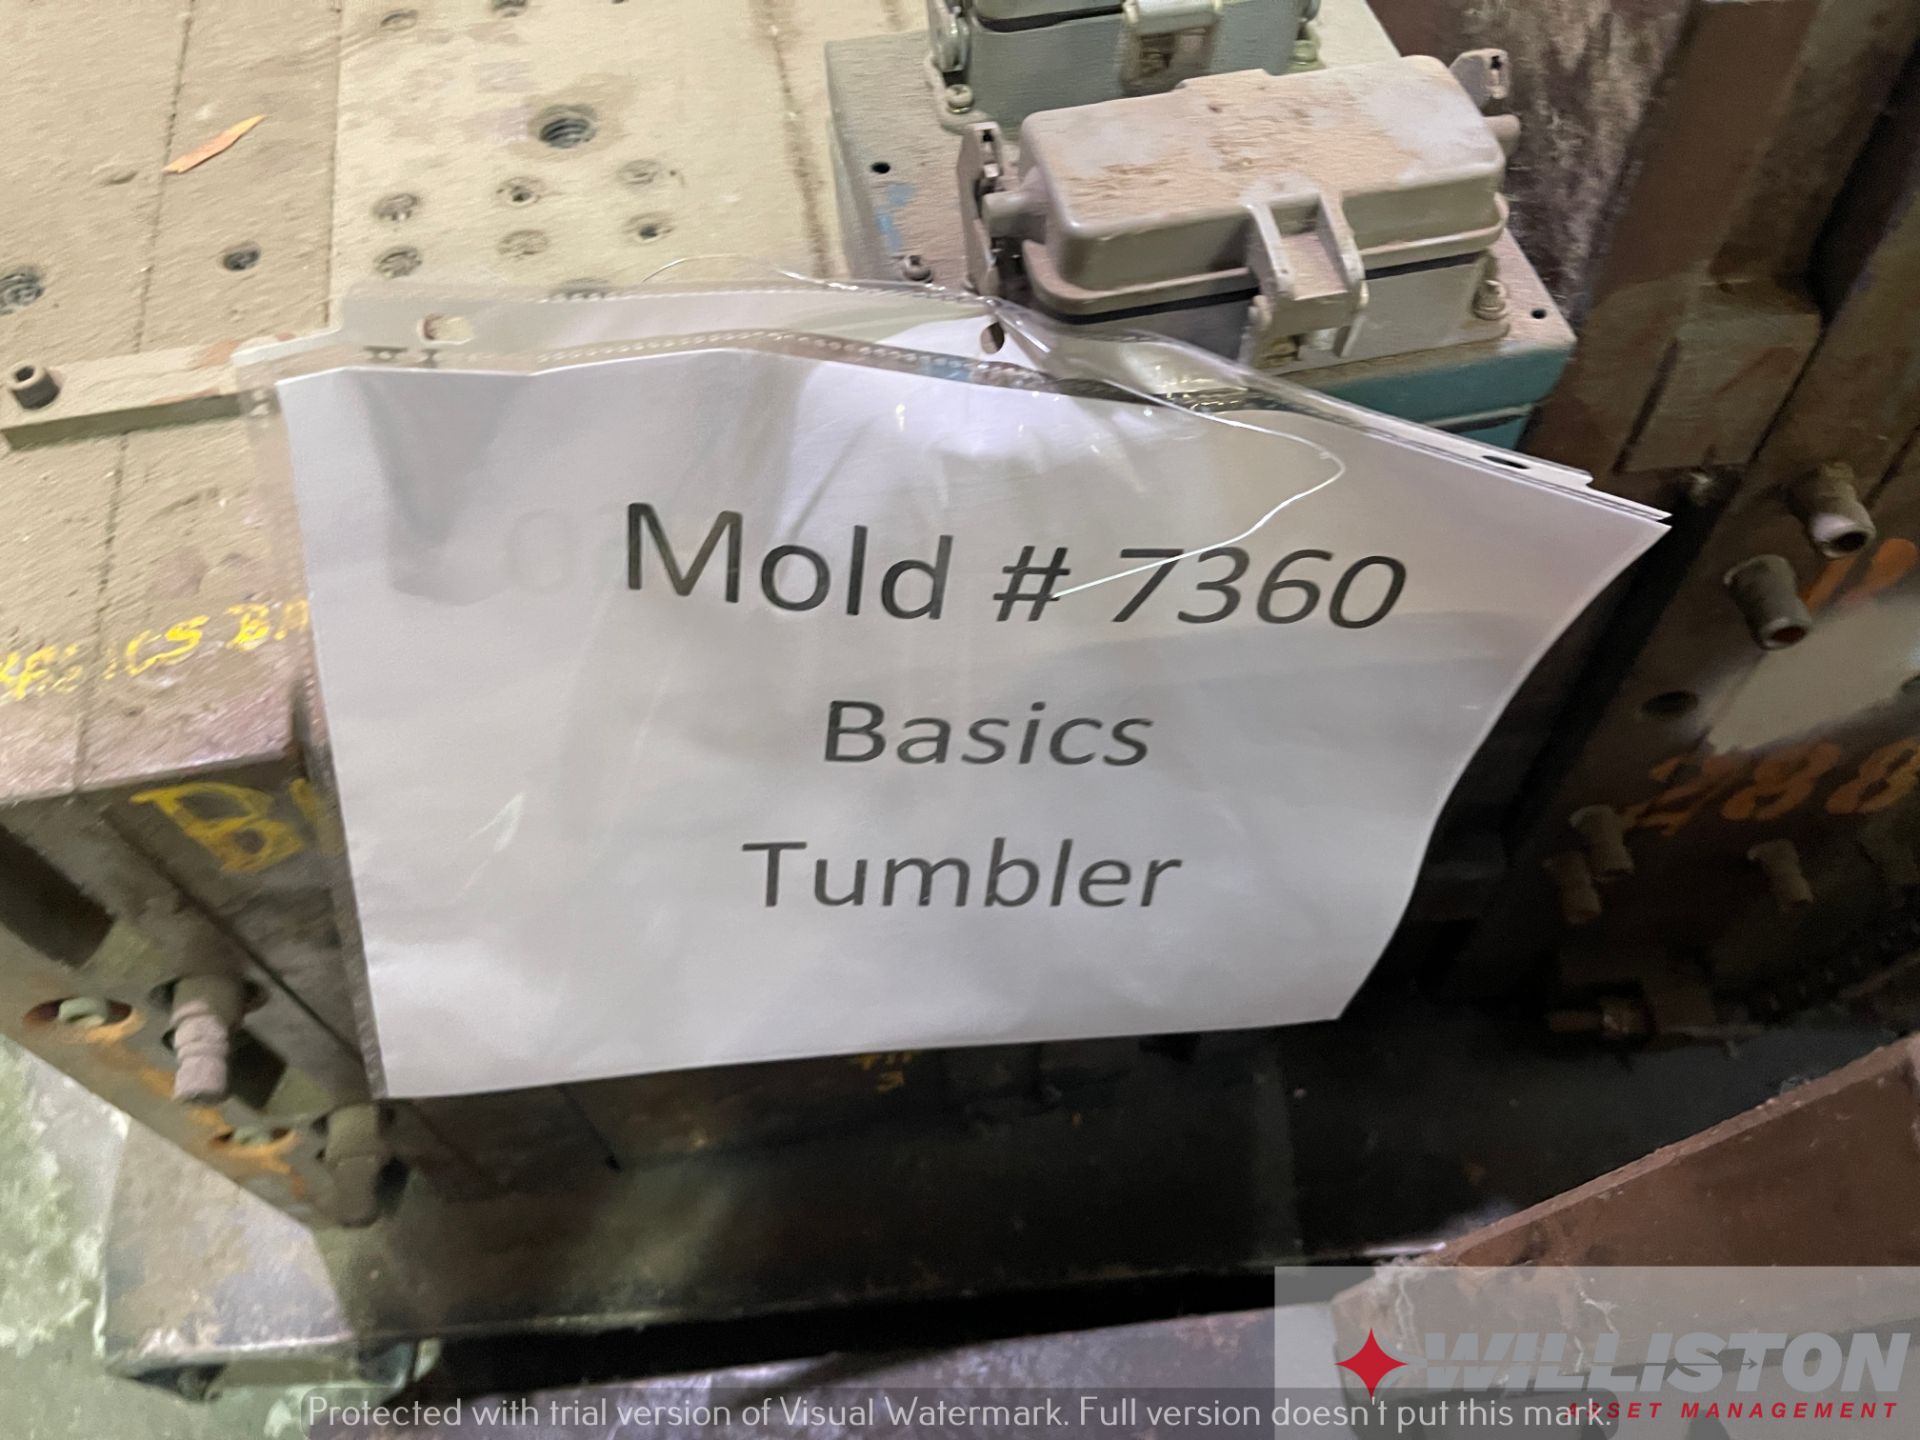 PLASTIC INJECTION MOLD - Basics Tumbler - Image 2 of 6